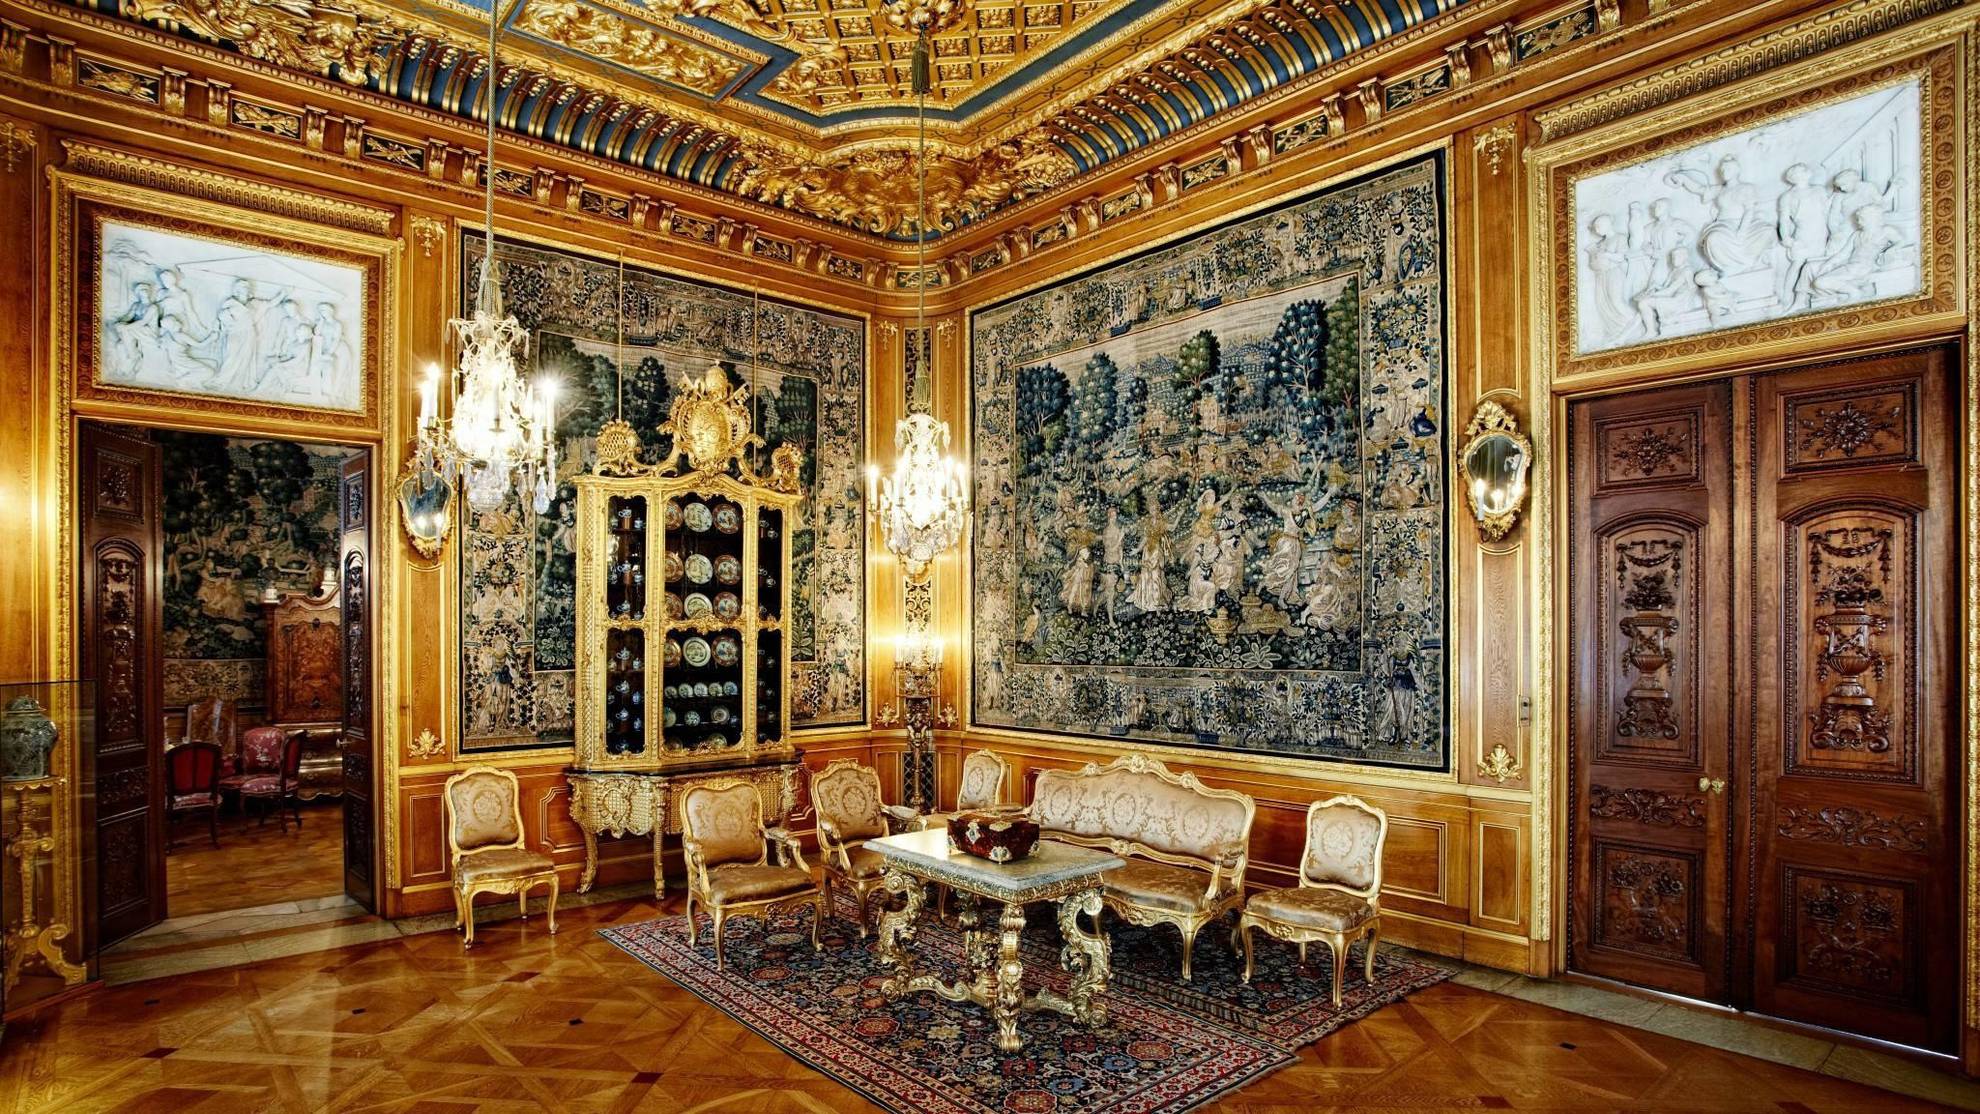 Le luxueux salon doré de la maison Hallwyl comporte de grands tableaux, des meubles dorés et des lustres.